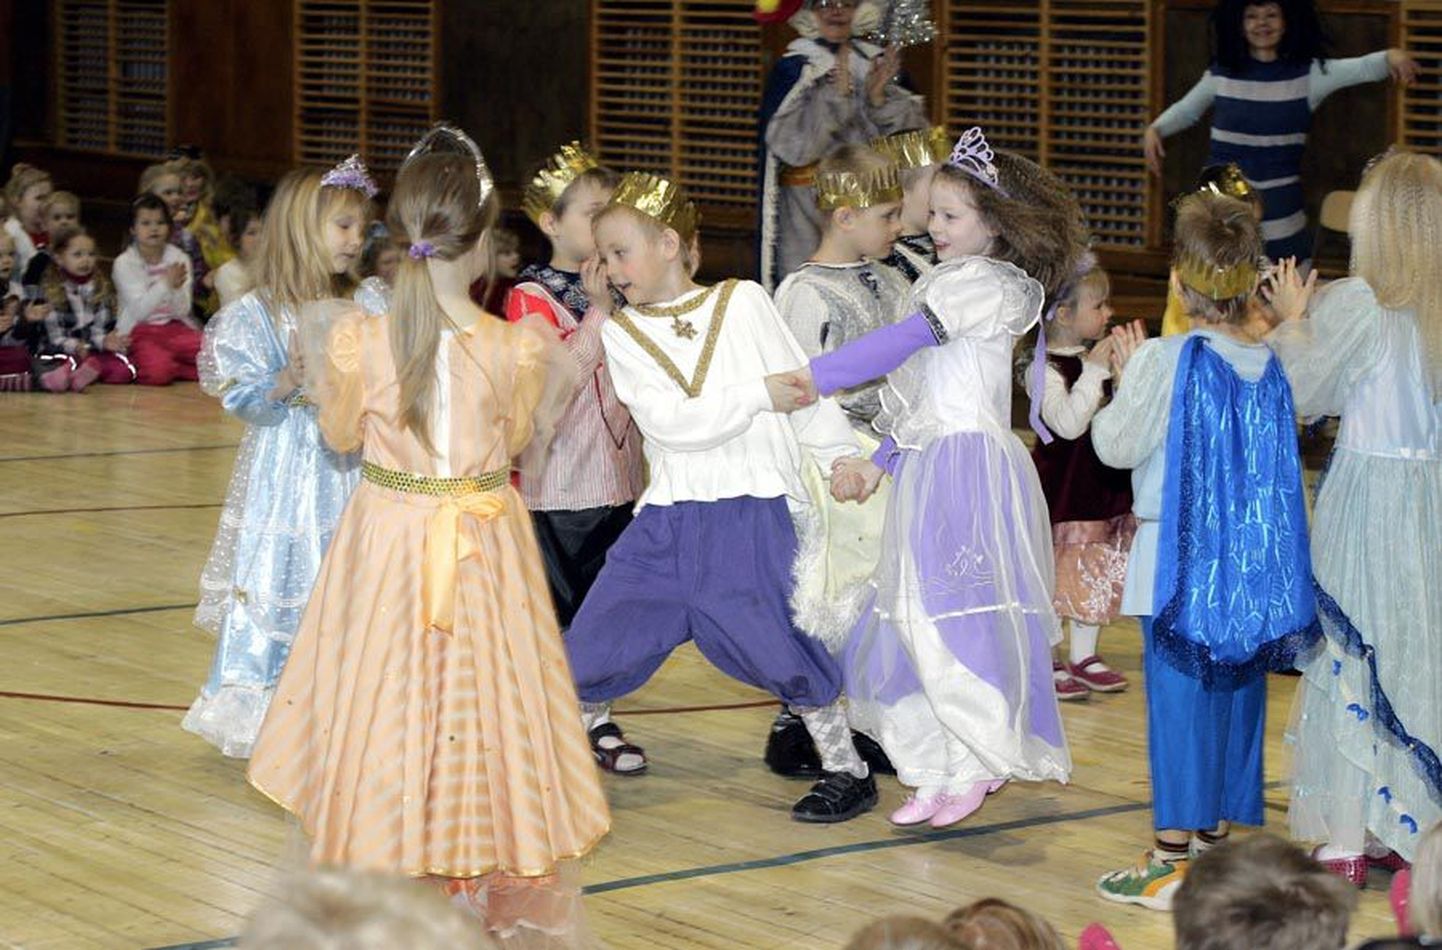 Männimäe lasteaia Oravakese rühma lapsed esitasid avamisel etenduse Tuhkatriinust. Pildi keskel on prints ja Tuhkatriinu tantsuhoos.